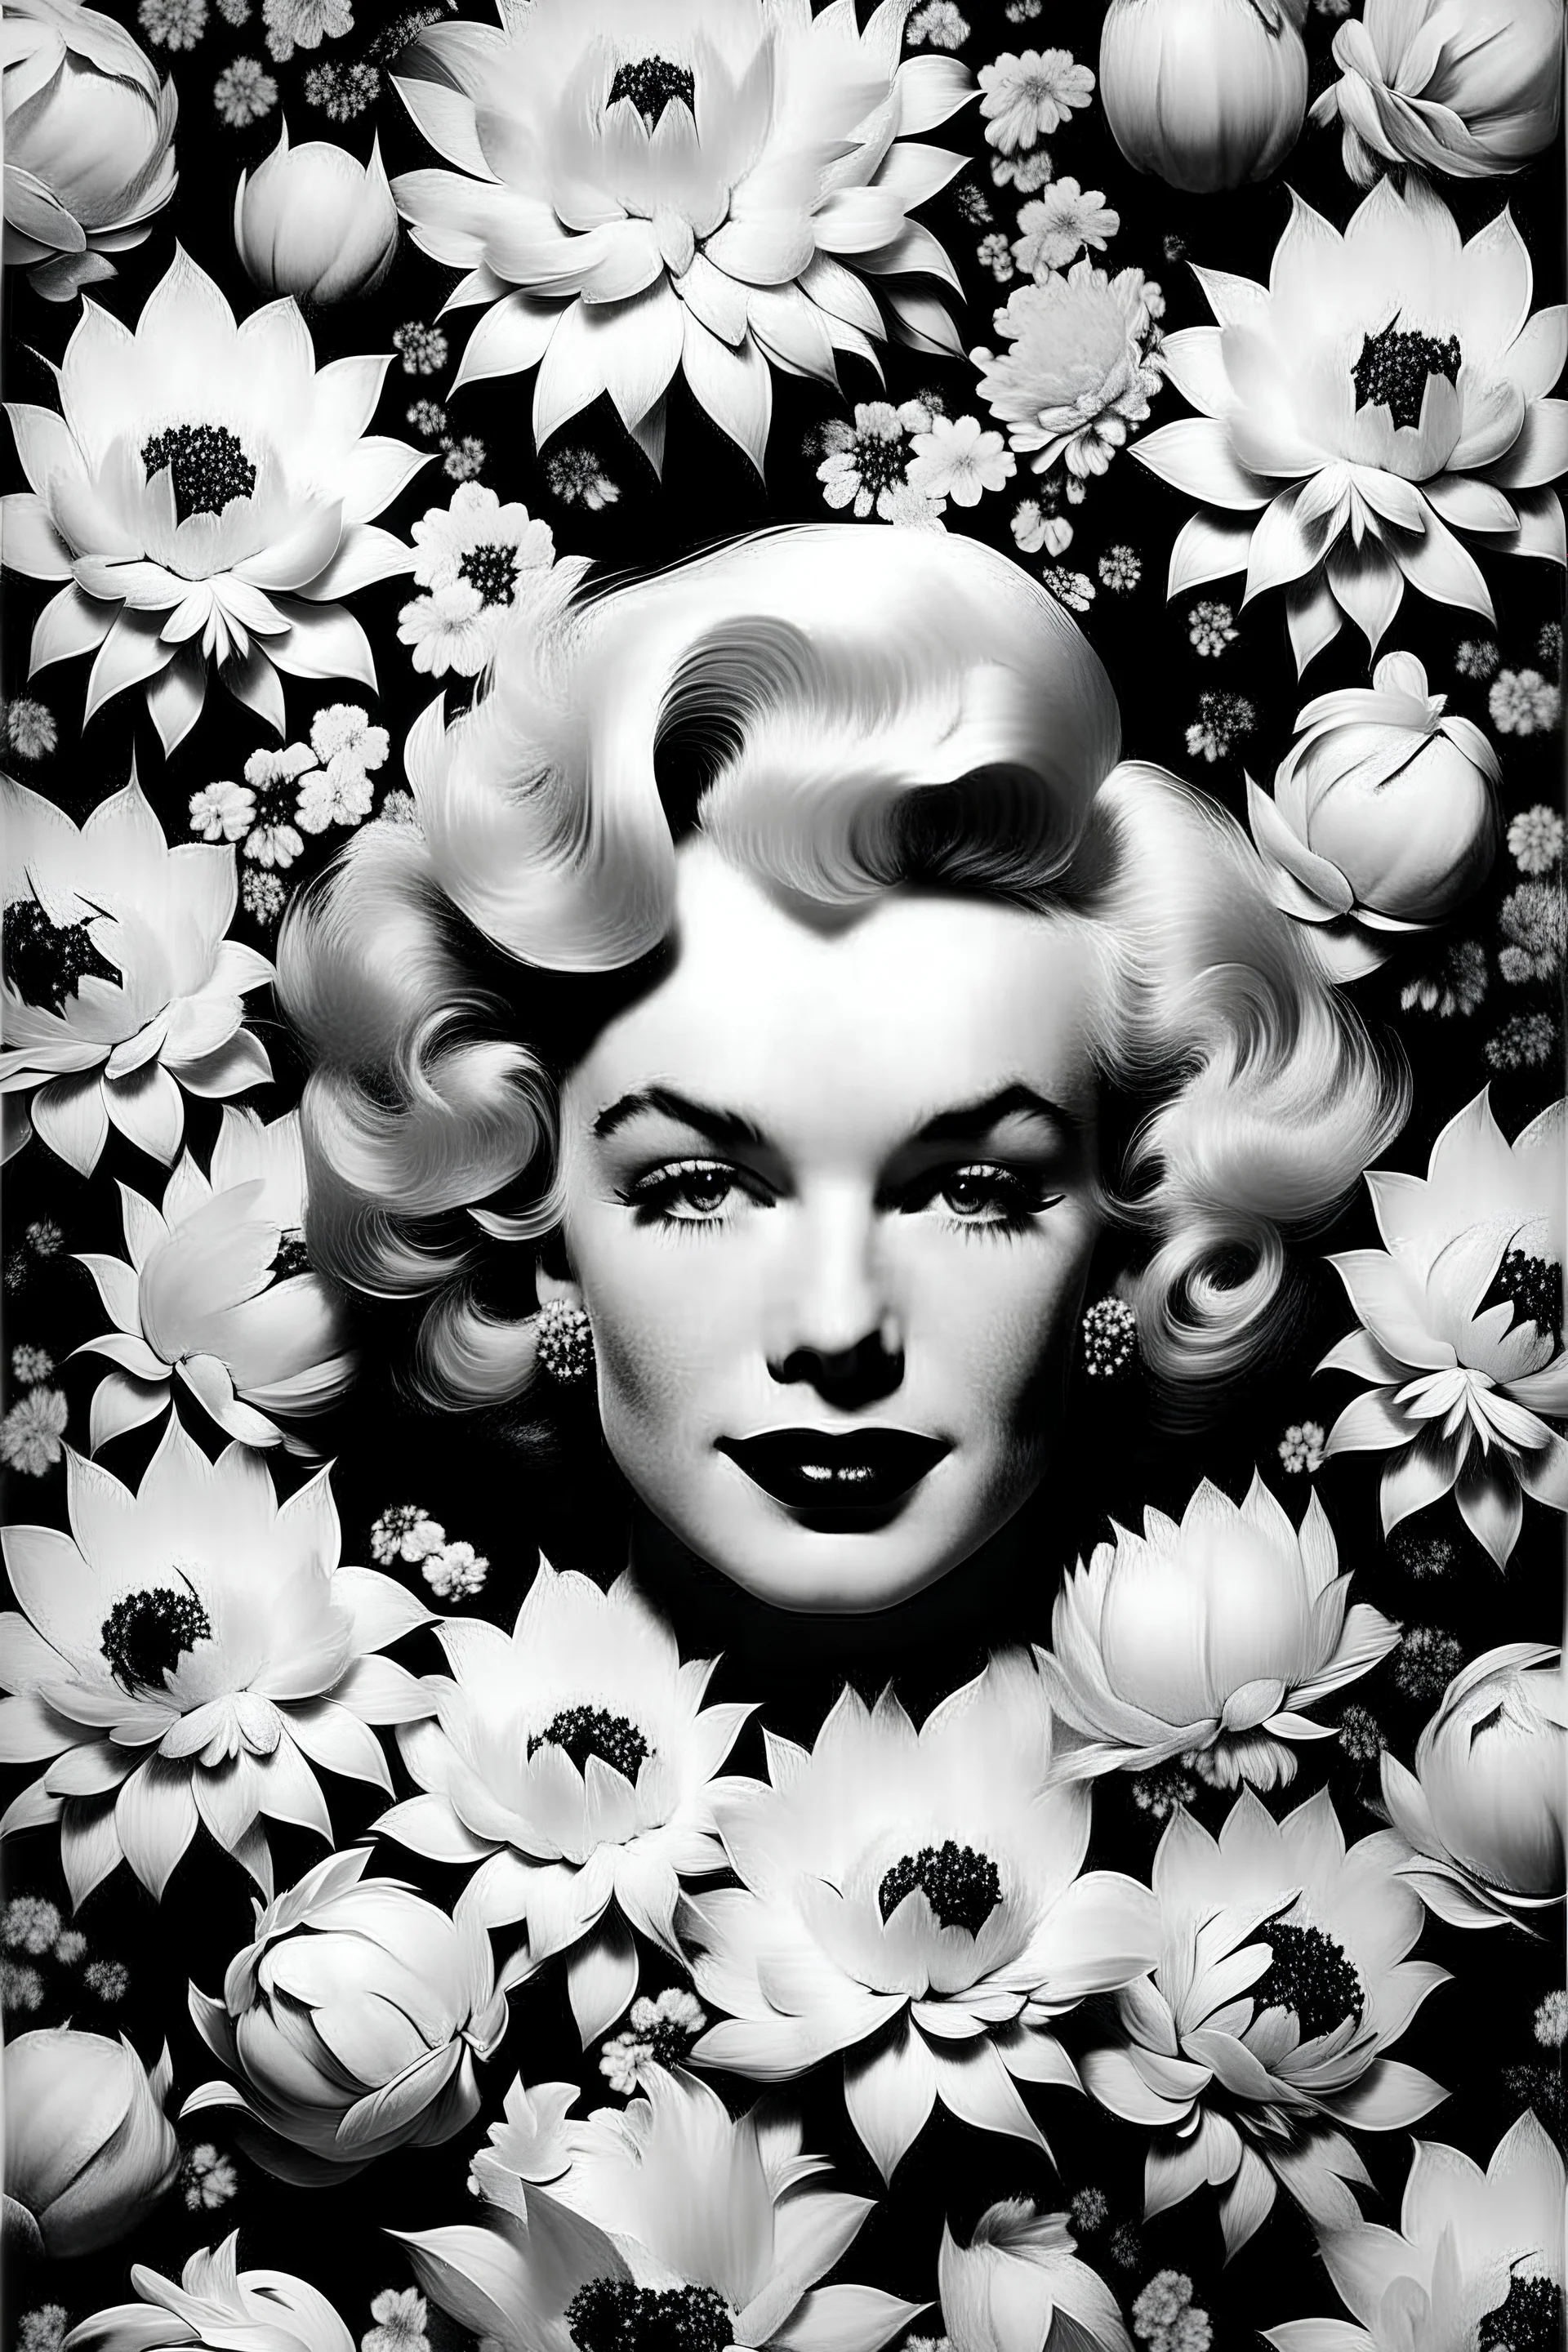 créame una imagen de fondo de flores y que el centro sea Marlyn Monroe y que ella sola este en blanco y negro las flores estén en colores